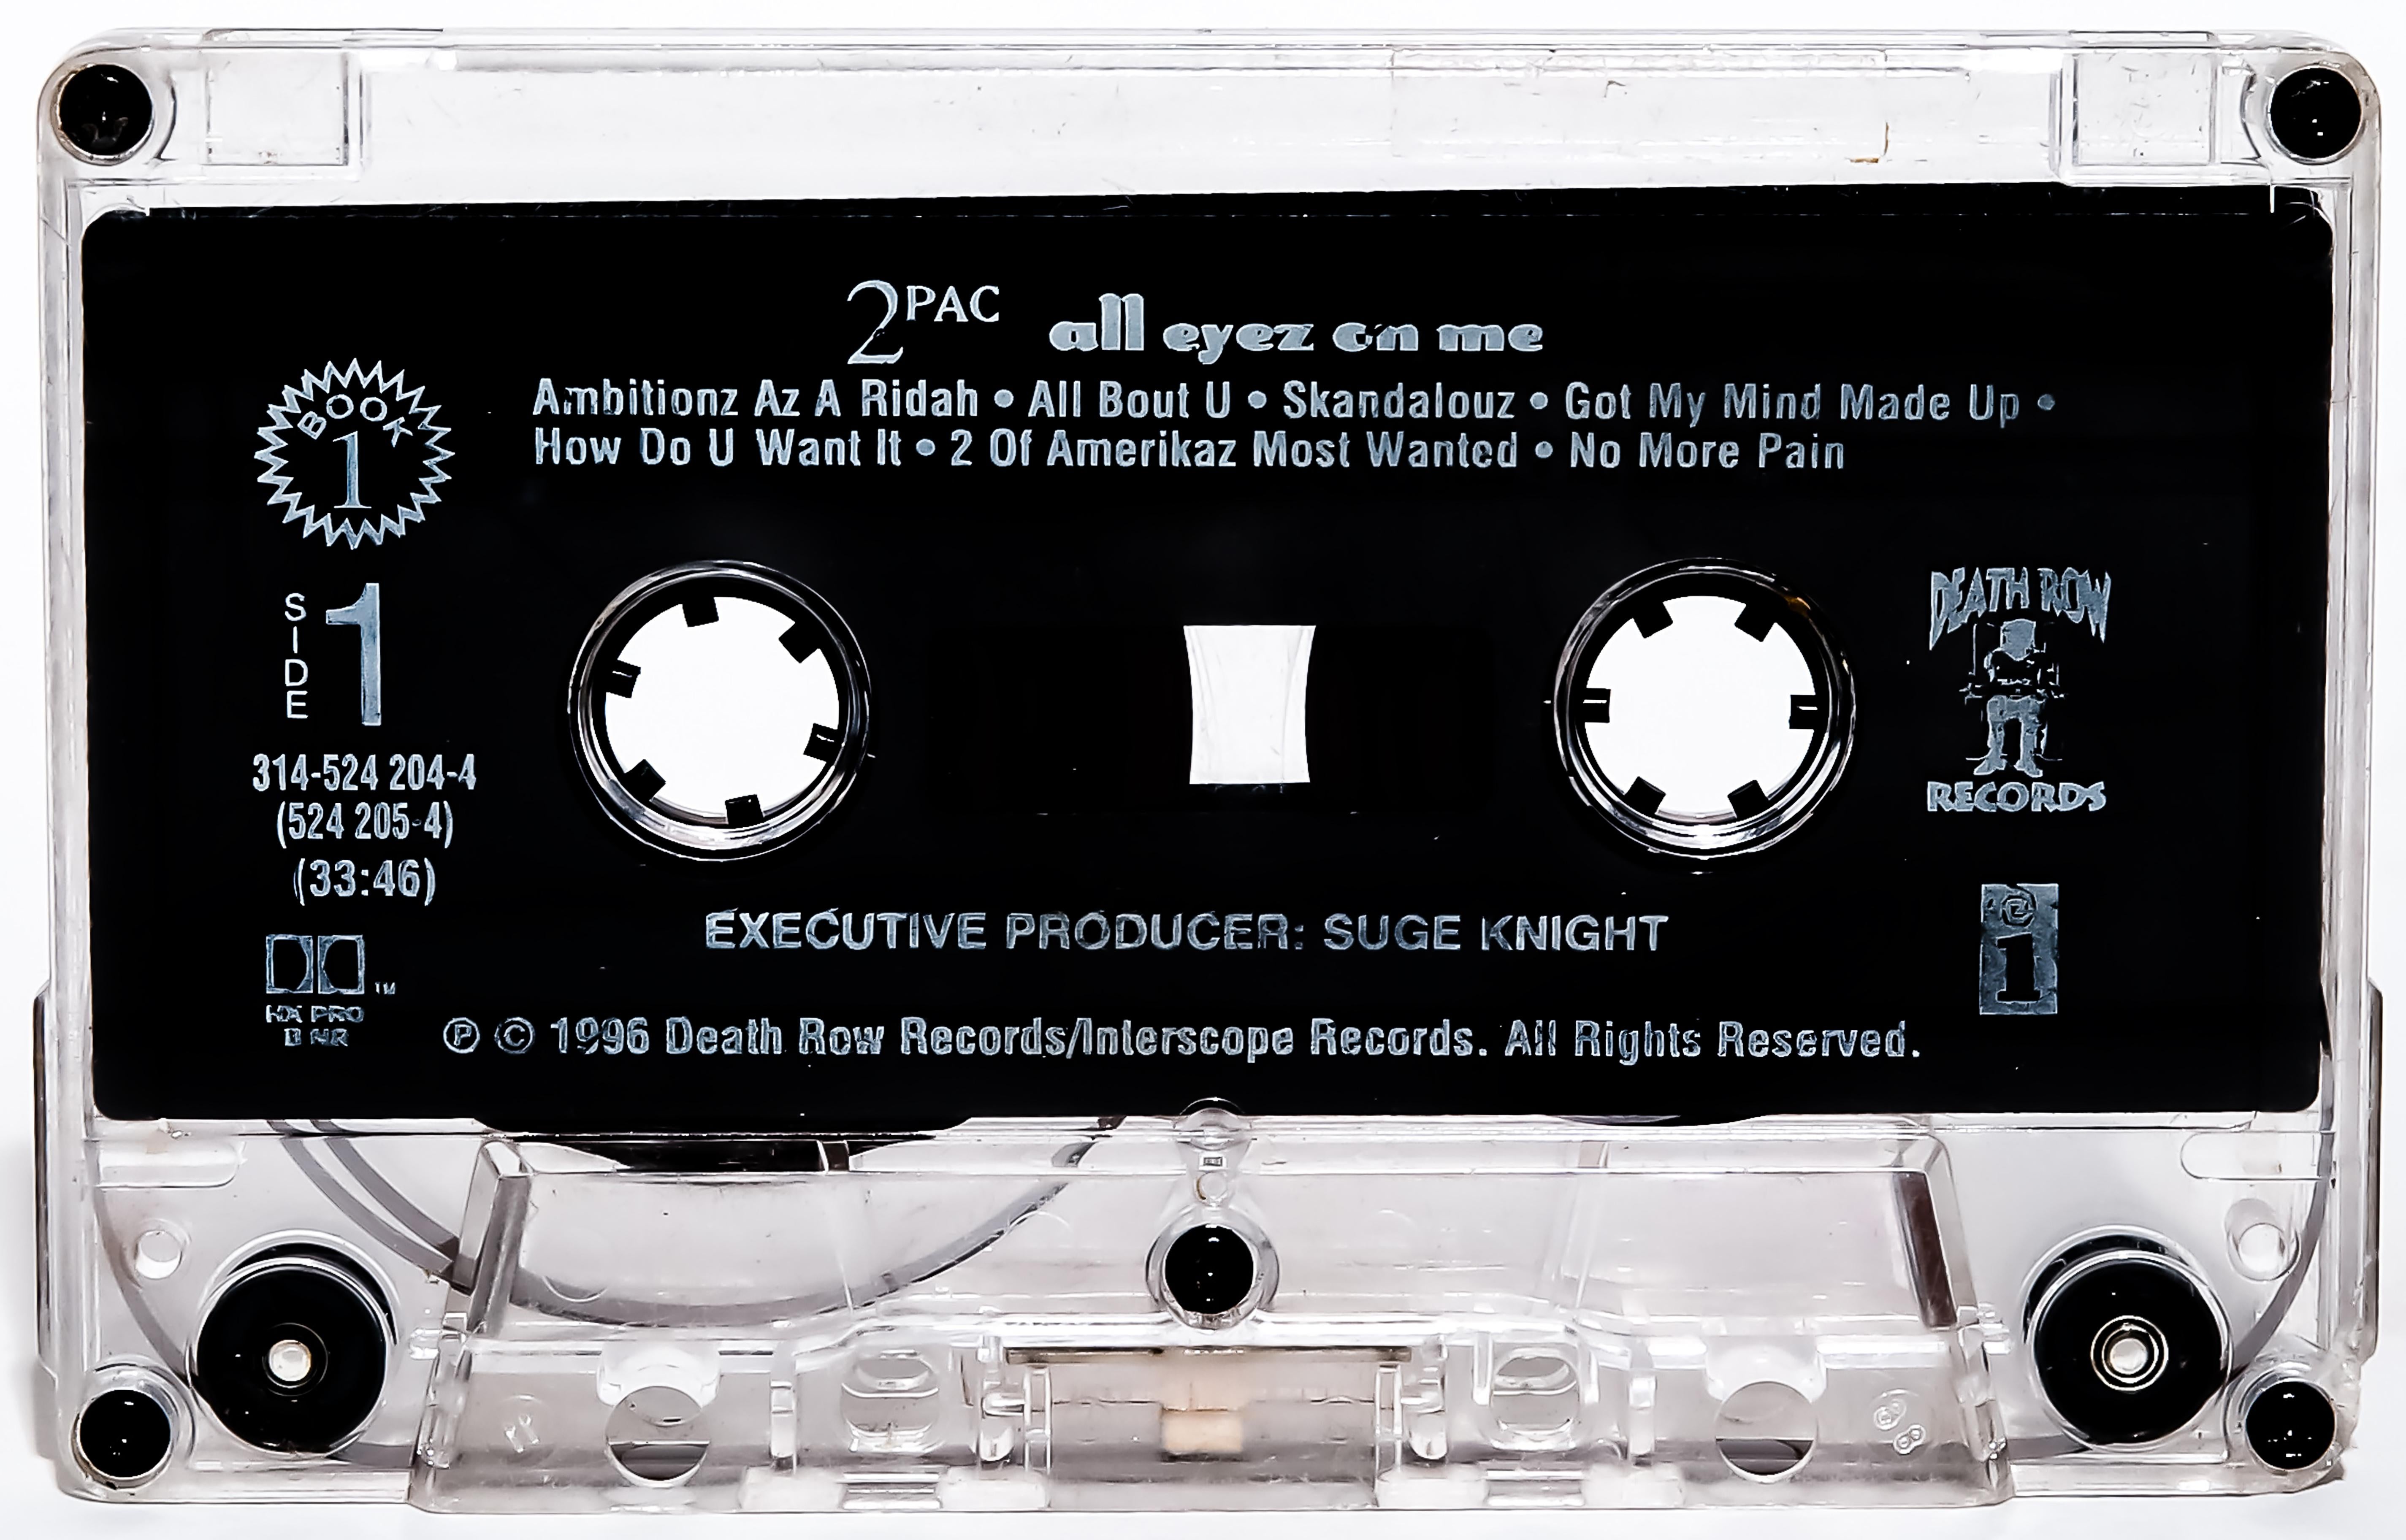 Destro Color Photograph - Tupac Shakur 2pac "All Eyez On Me" Cassette Photography 30x50 Pop Art Photograph